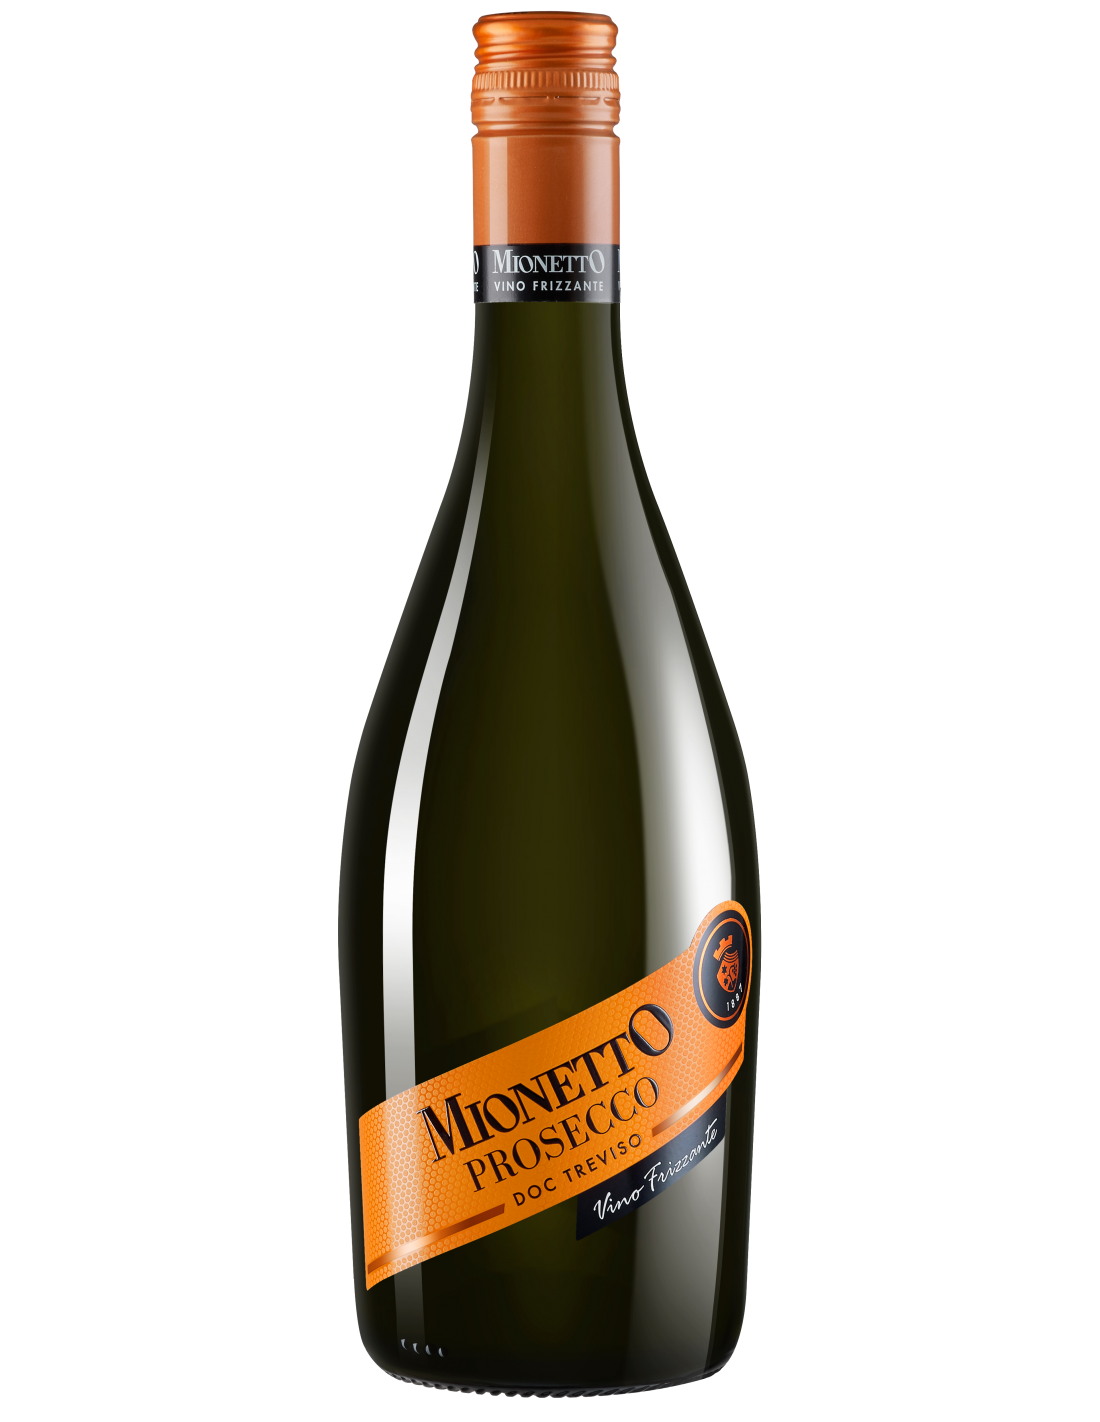 Vin frizzante Mionetto Prosecco Brut, 11% alc., 0.75L, Italia alcooldiscount.ro